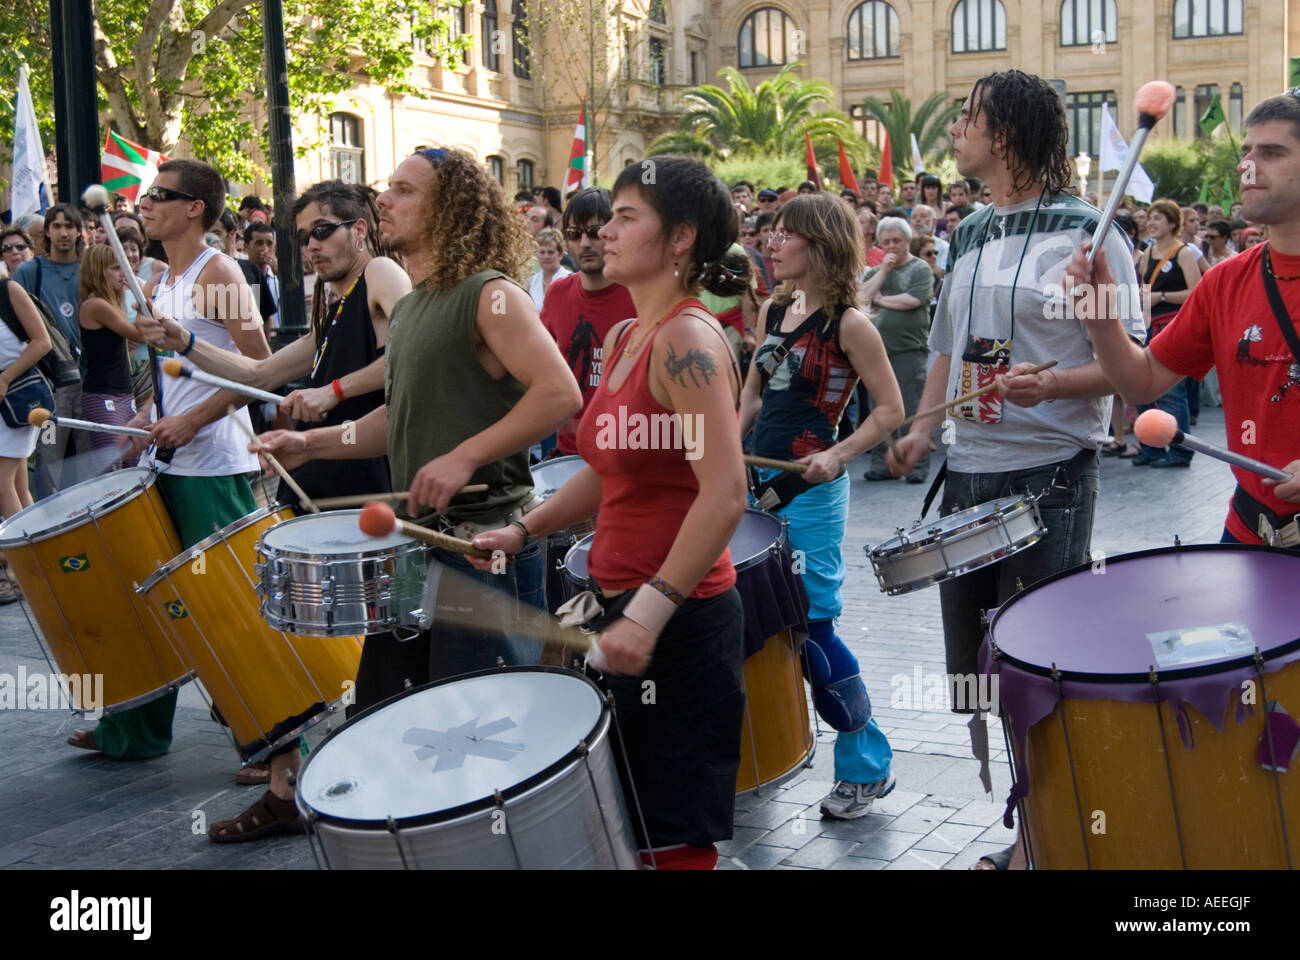 Batteurs et percussionnistes banging drums et faire du bruit lors d'une démonstration, San Sebastian, Espagne Banque D'Images